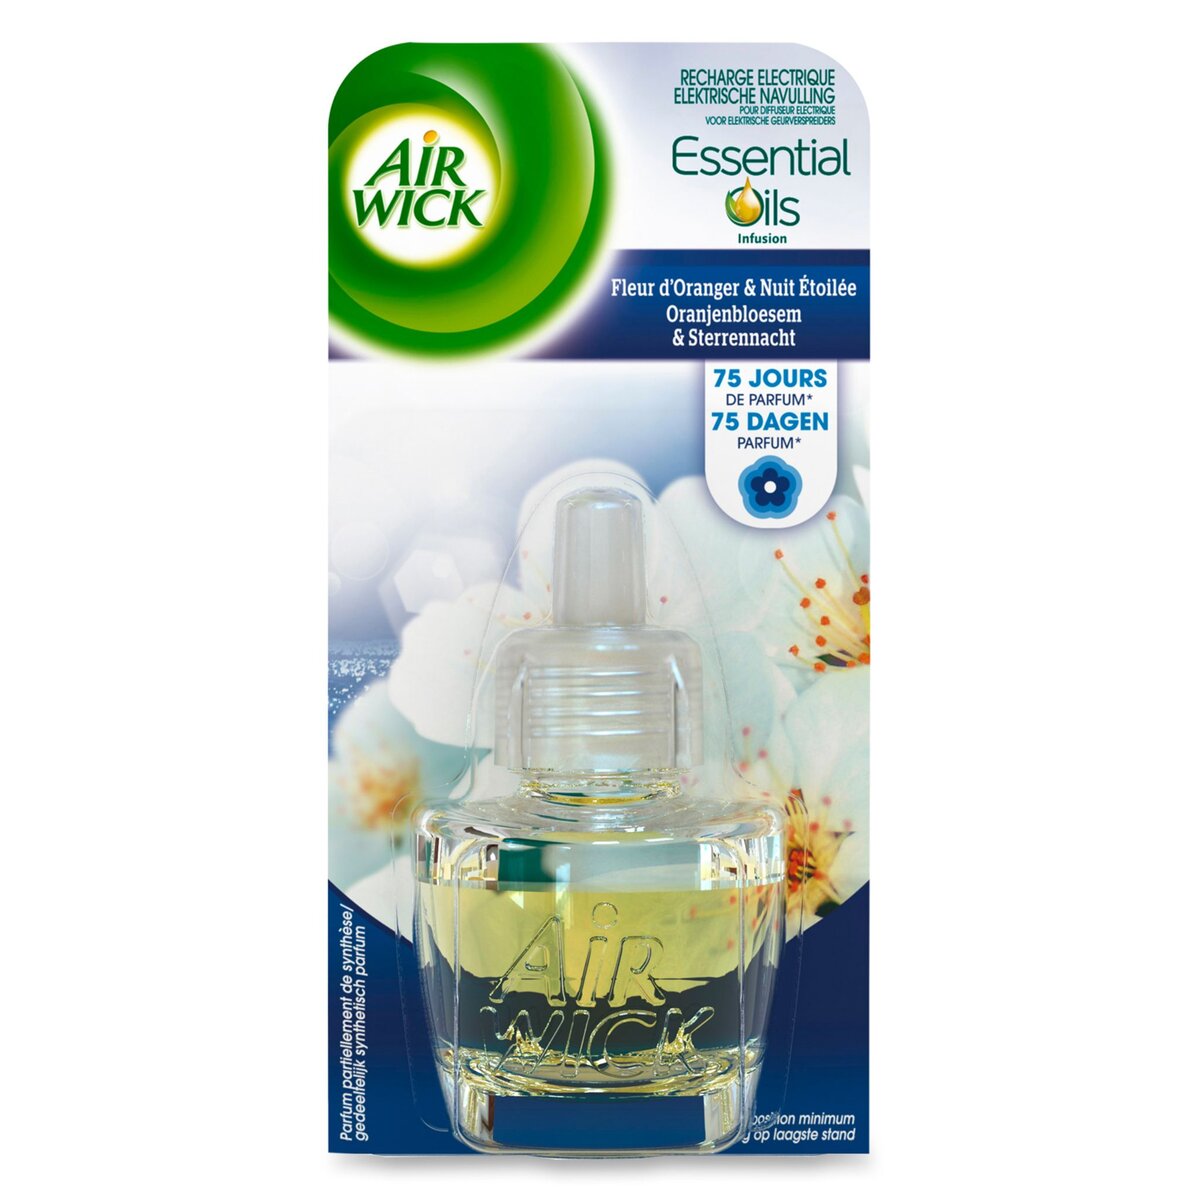 AIR WICK Essential Oils recharge diffuseur électrique fleur d'oranger 19ml